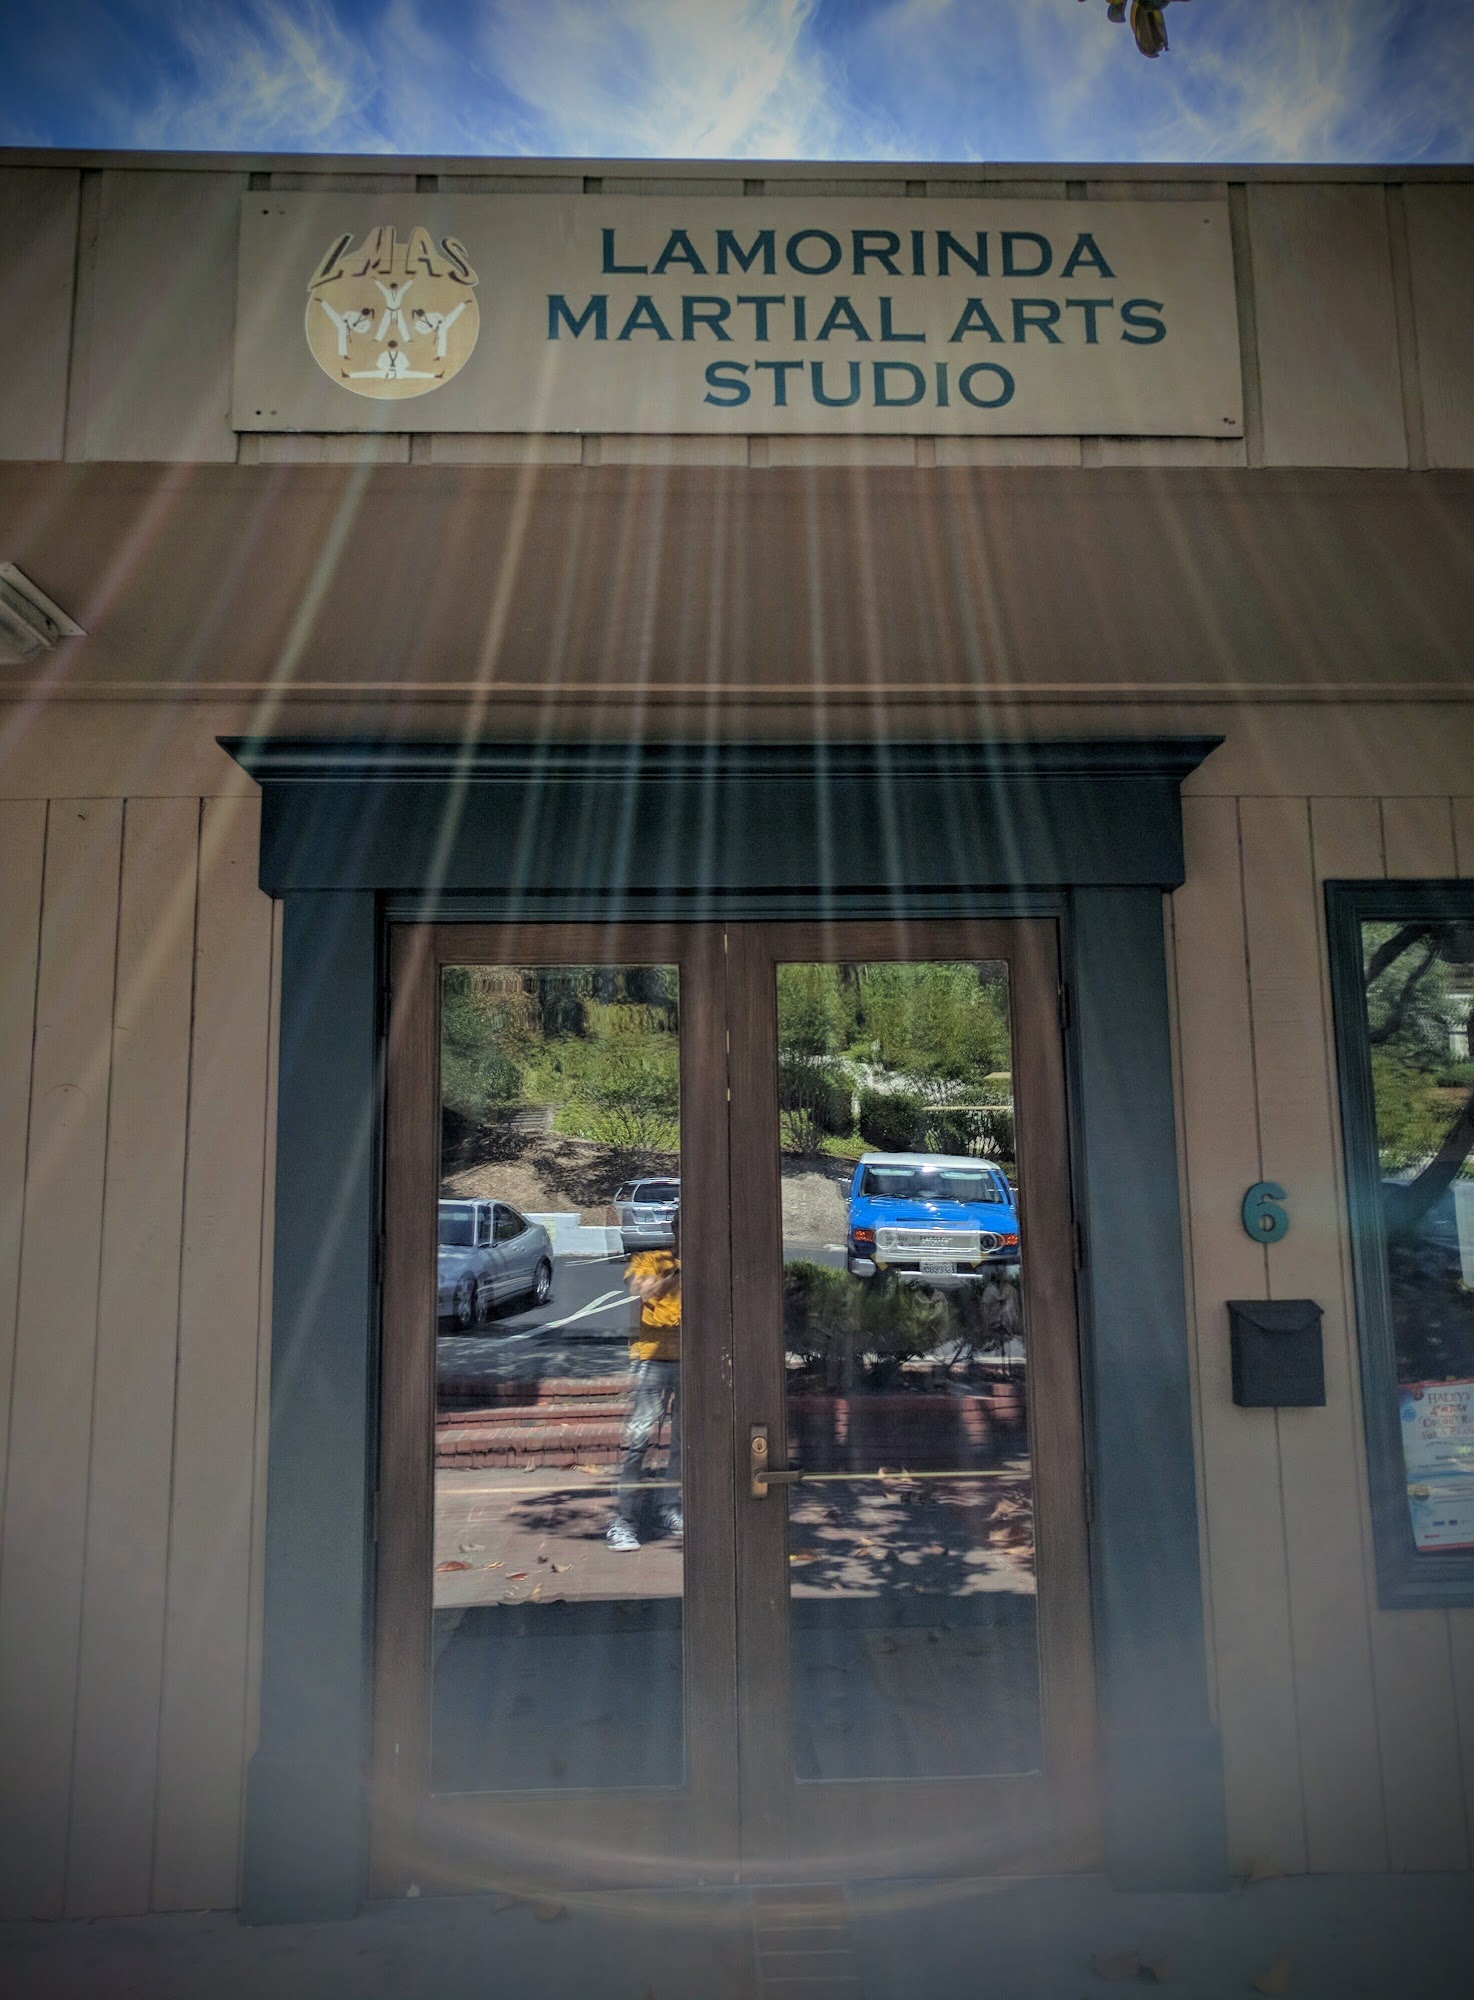 Lamorinda Martial Arts Studio 81 Moraga Way Suite A, Orinda California 94563